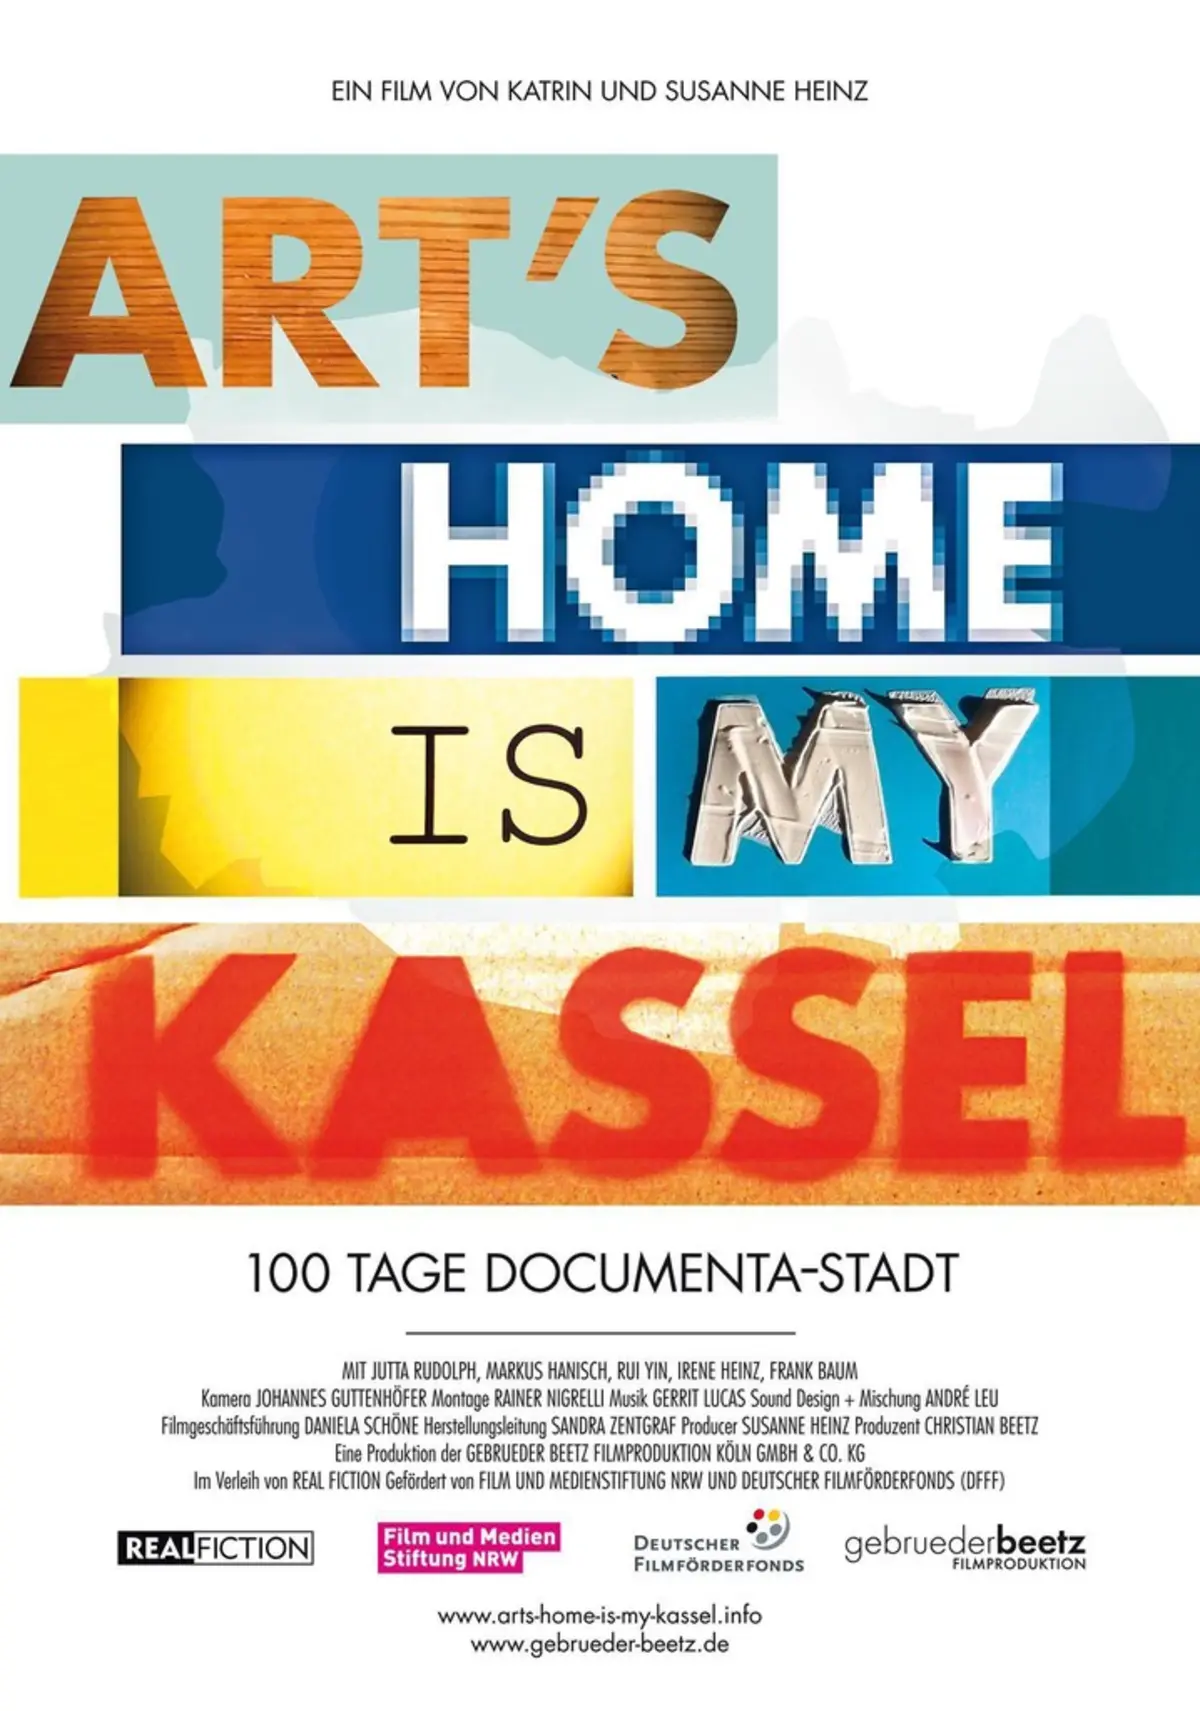 Art's Home is my Kassel